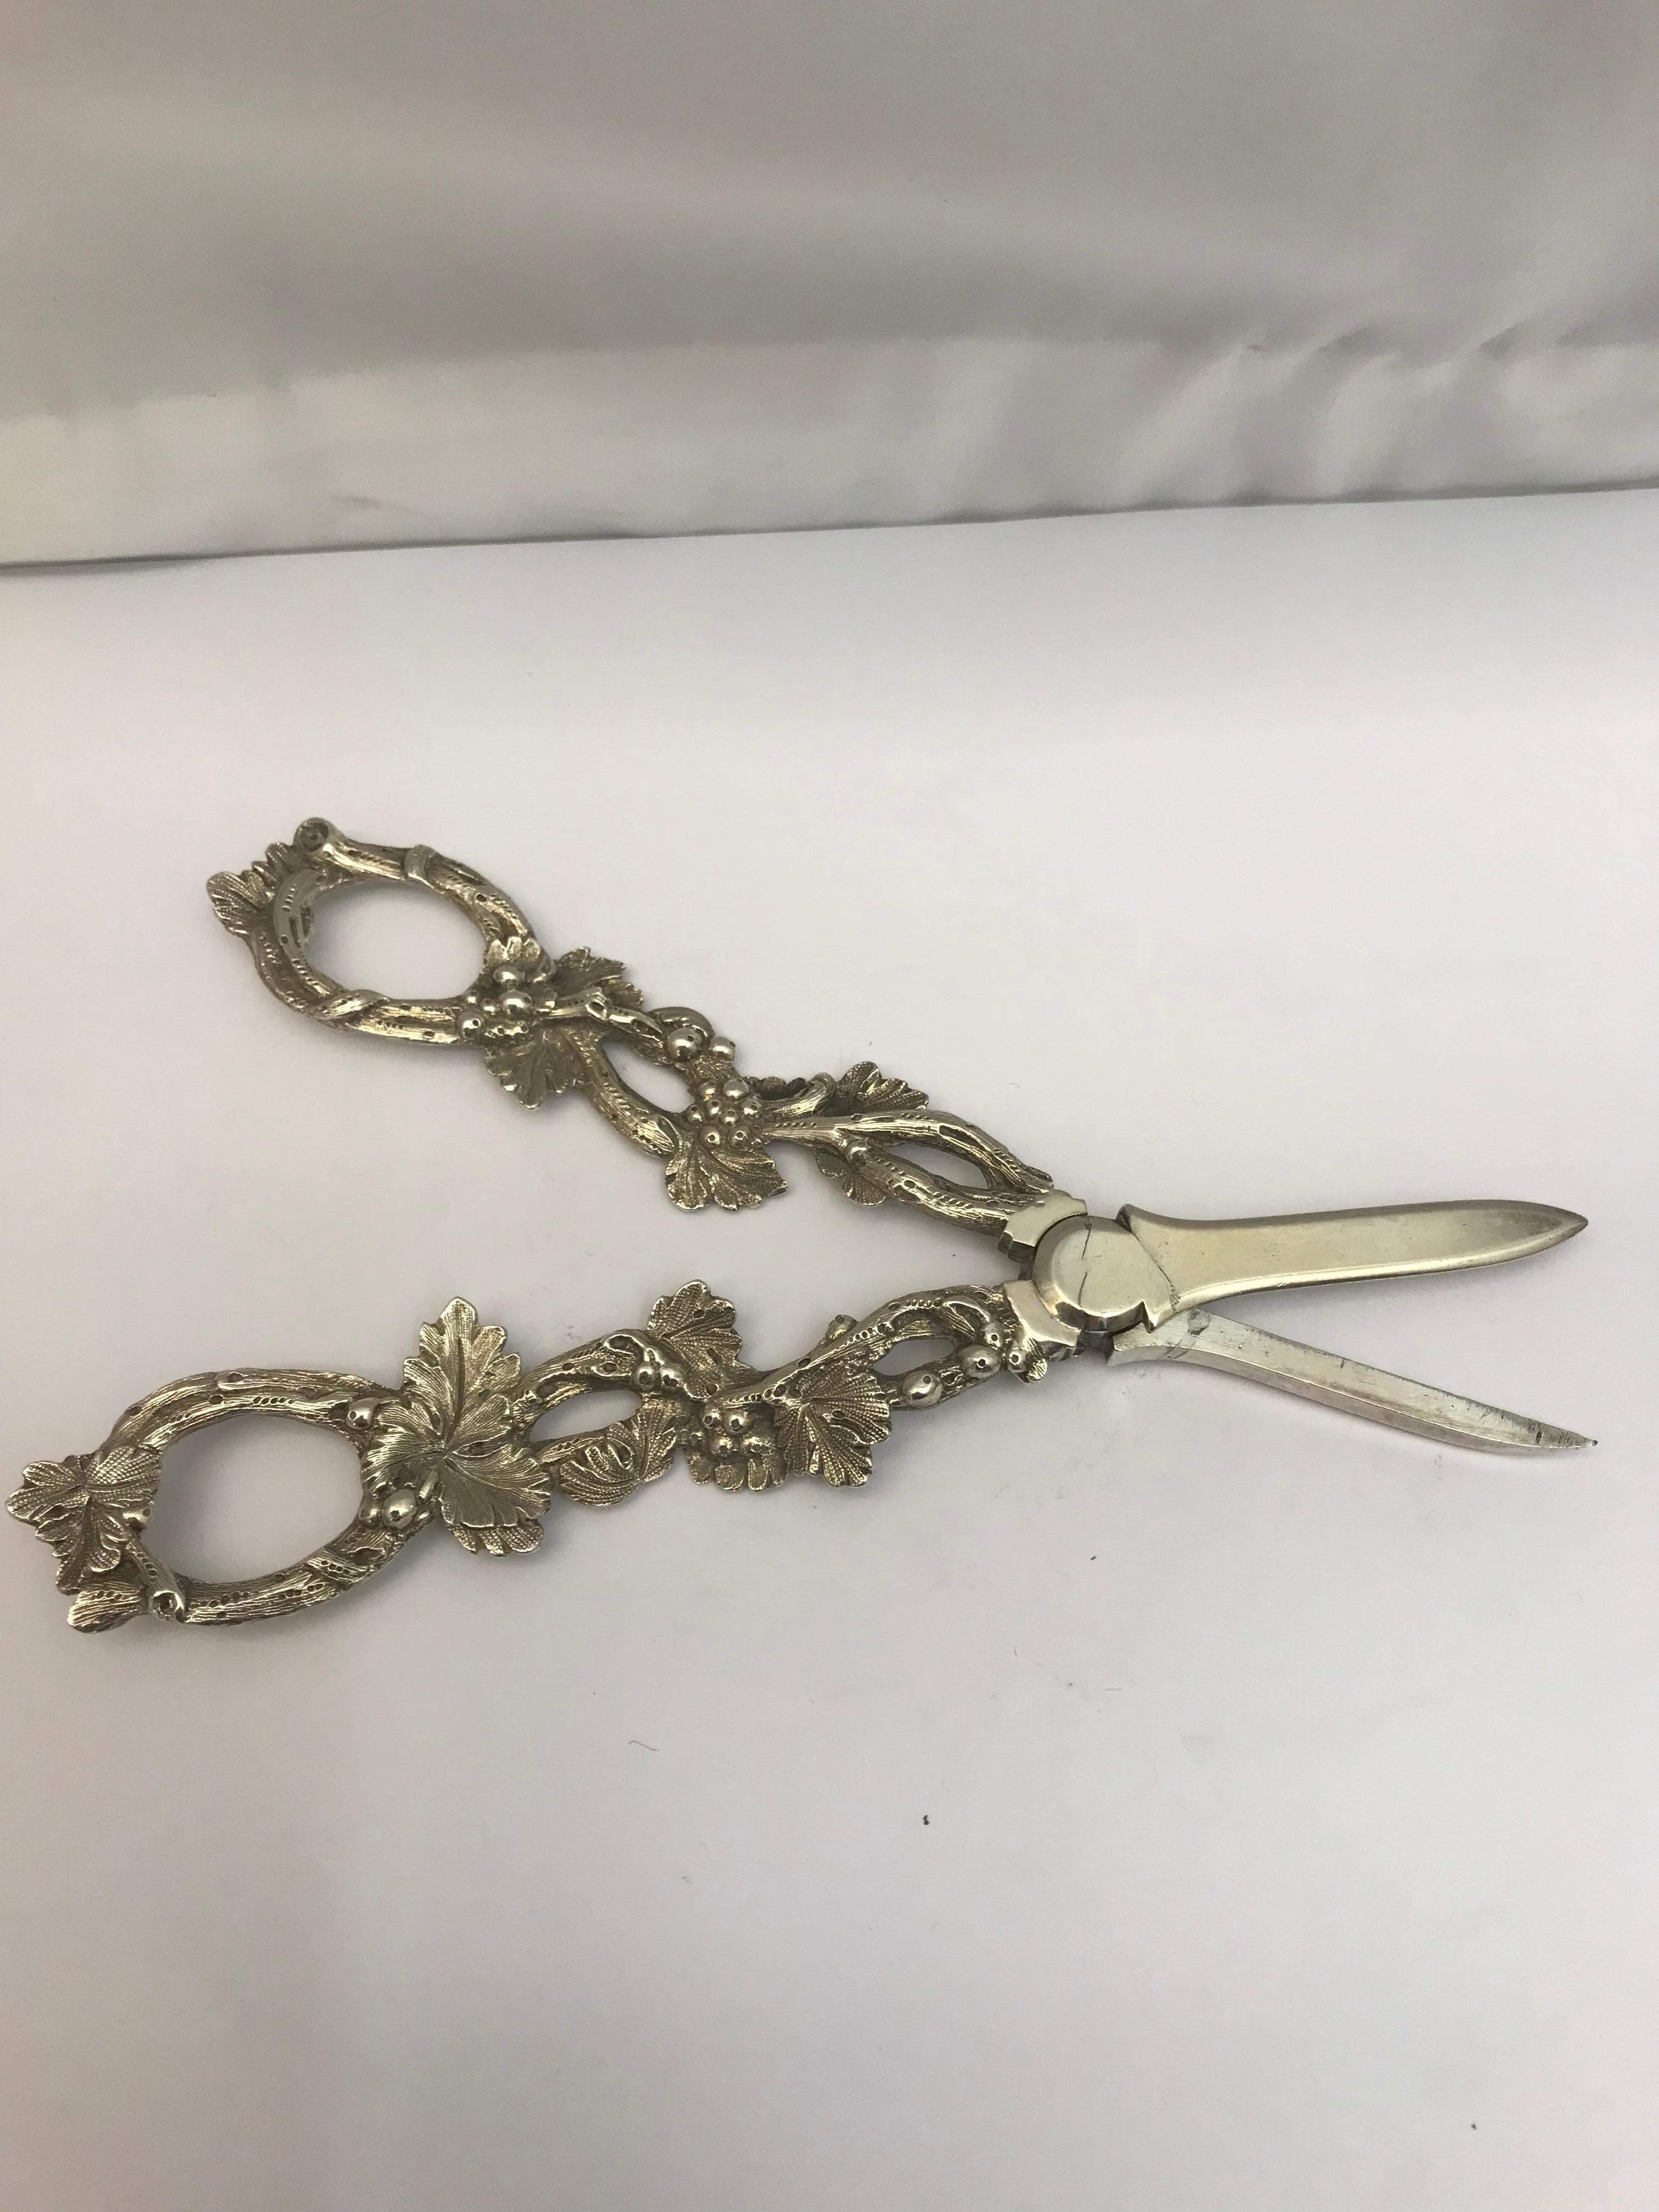 grape scissors antique